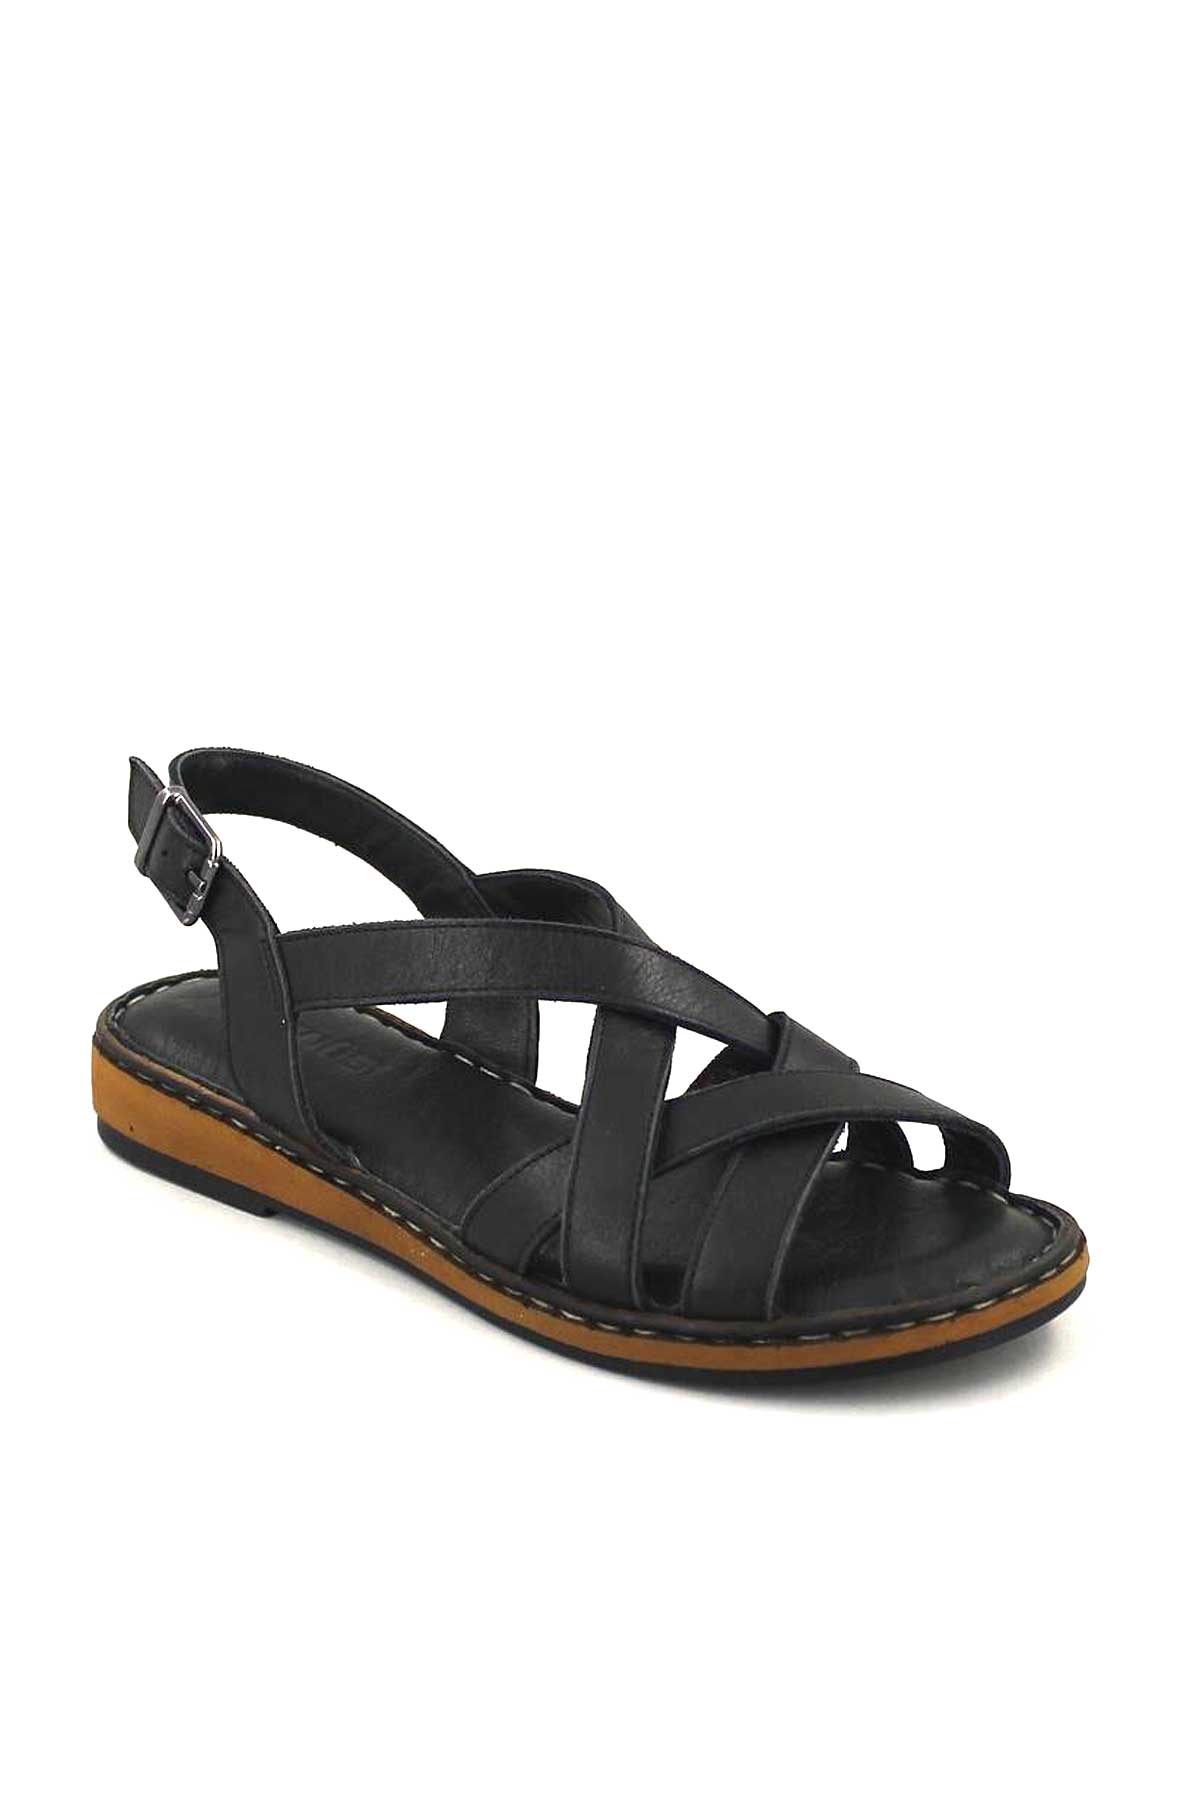 Kadın Deri Sandalet Siyah 20981202